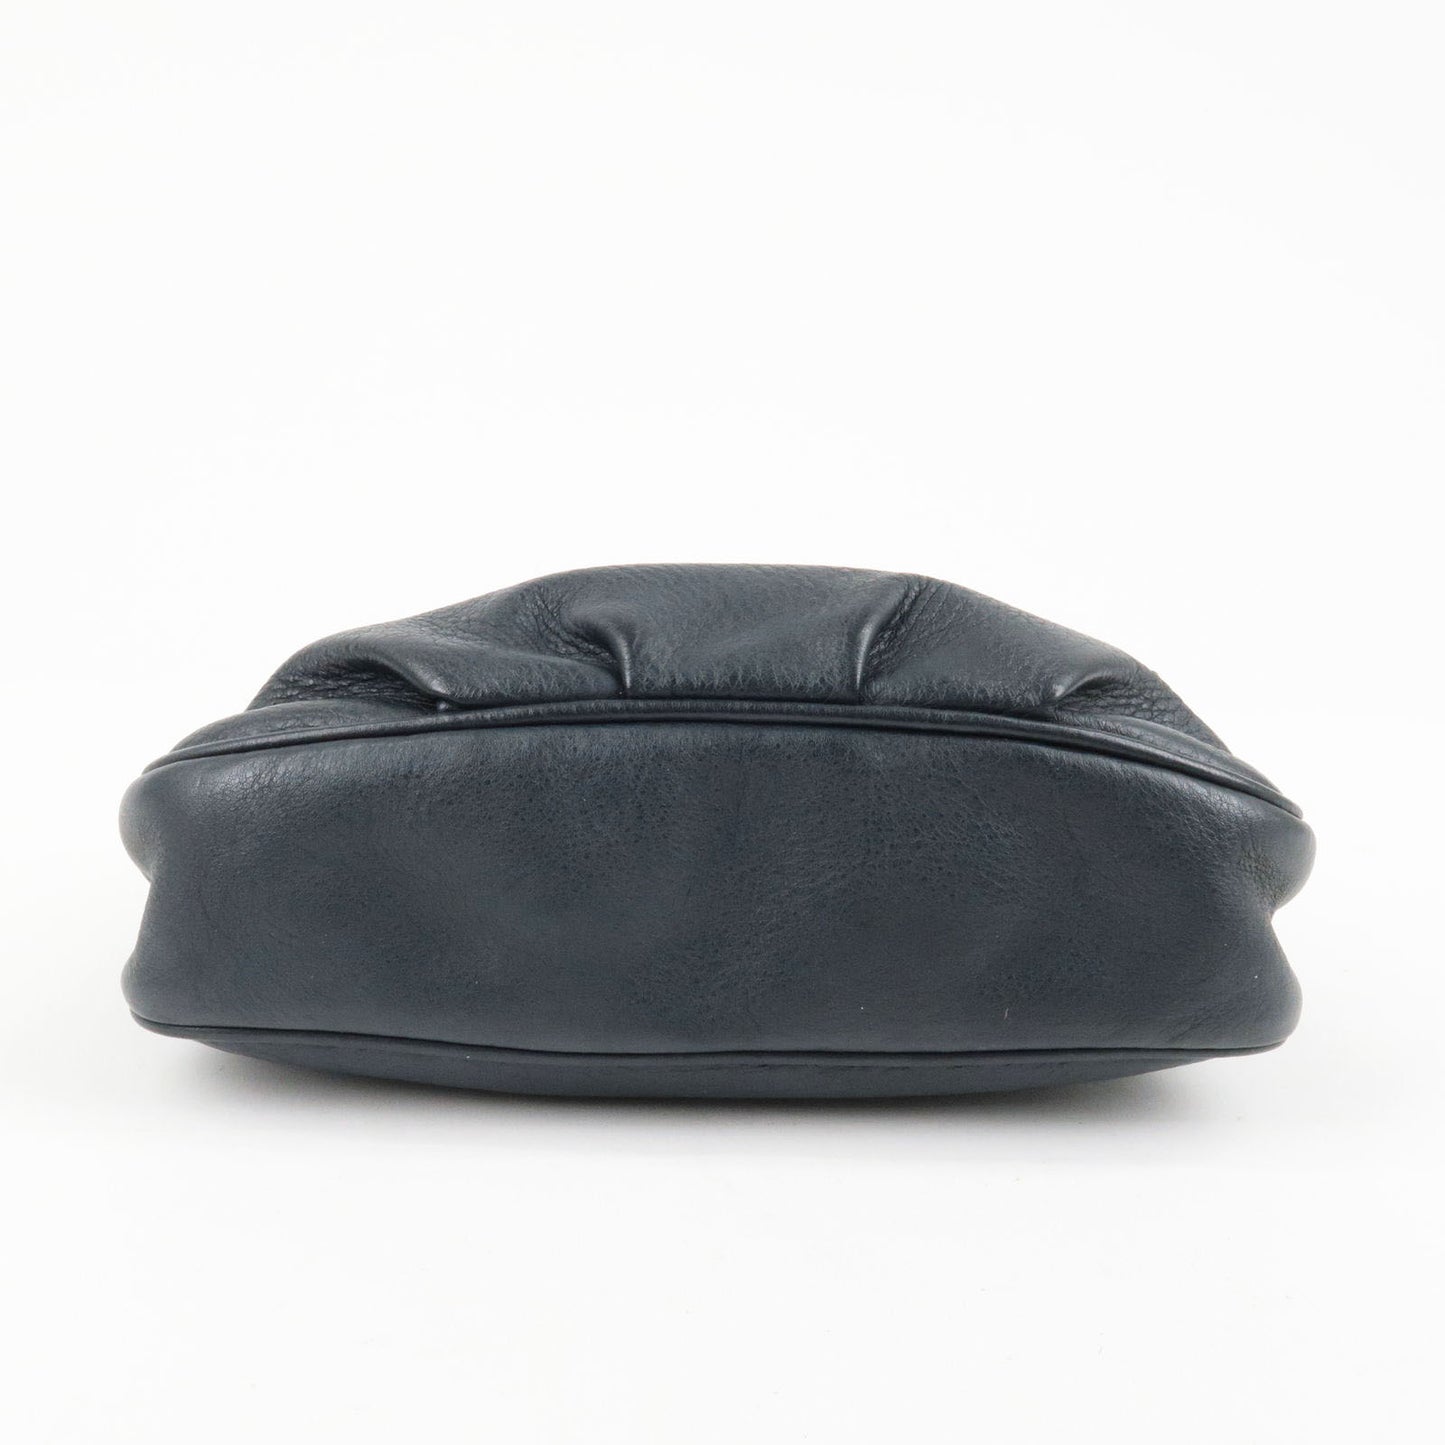 FENDI Leather Chain Shoulder Bag Purse Black 8M0276